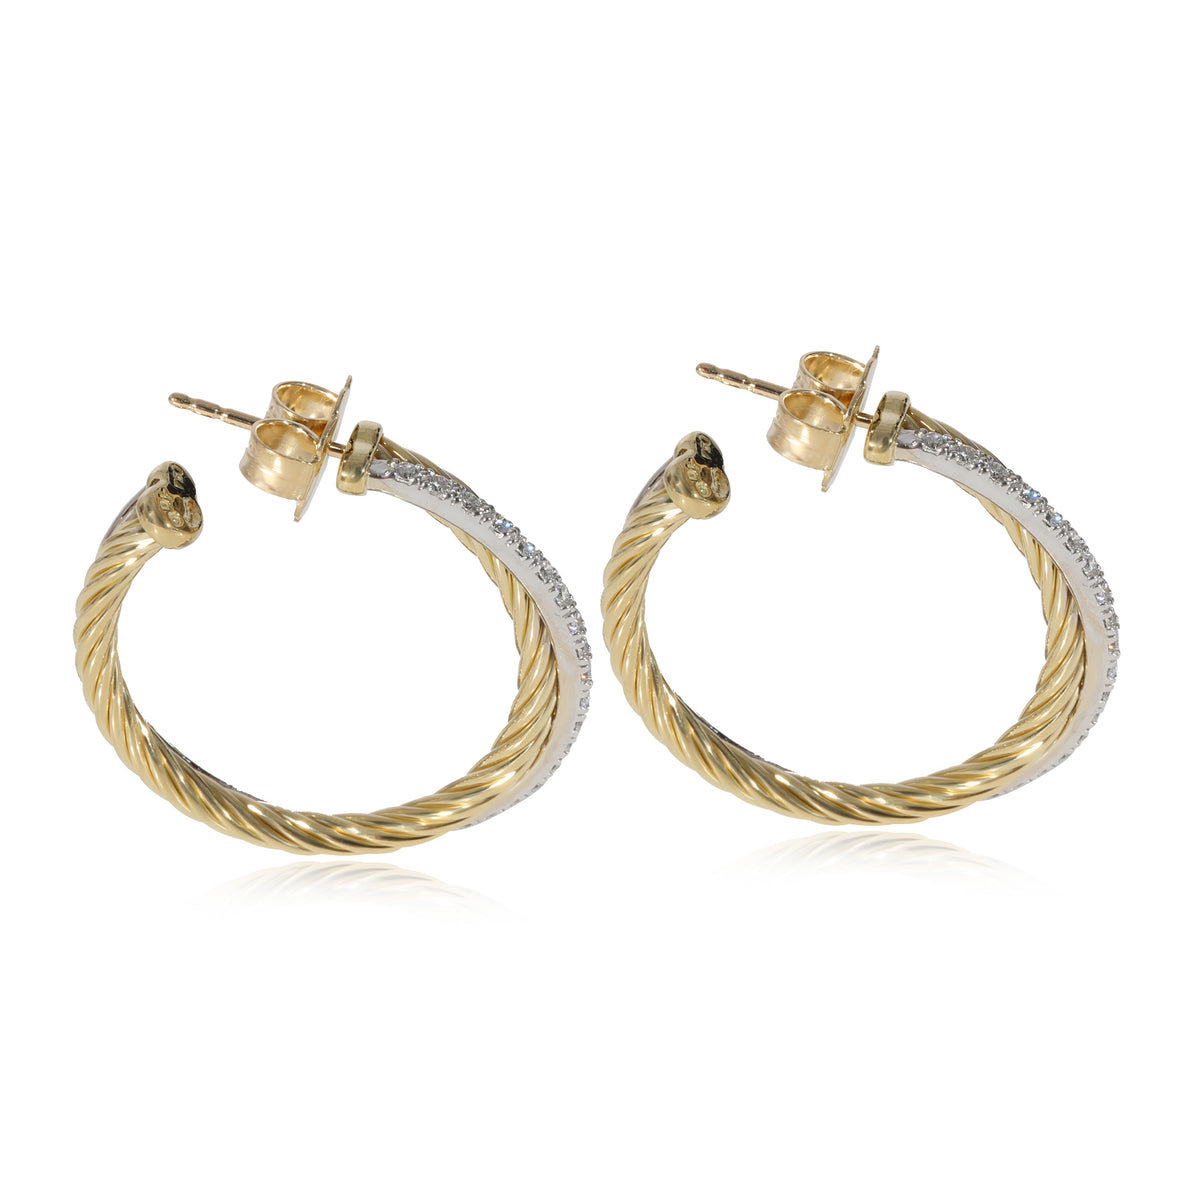 David Yurman Crossover Diamond Hoop Earring in 18k Gold/Sterling Silver